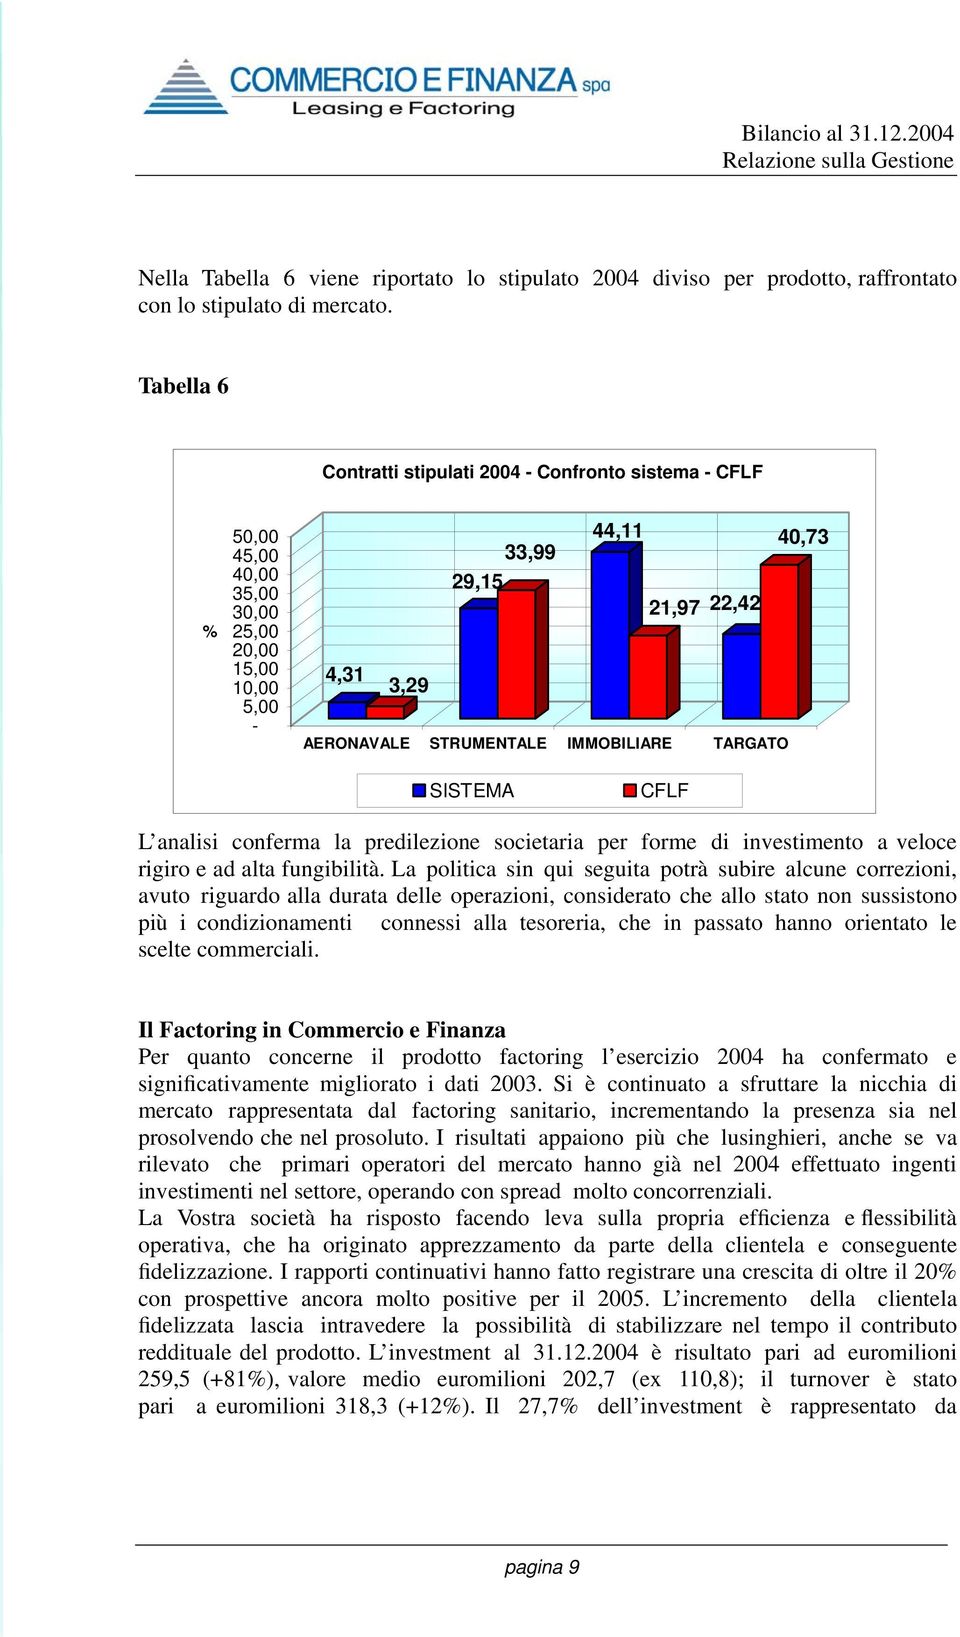 TARGATO 40,73 SISTEMA CFLF L analisi conferma la predilezione societaria per forme di investimento a veloce rigiro e ad alta fungibilità.